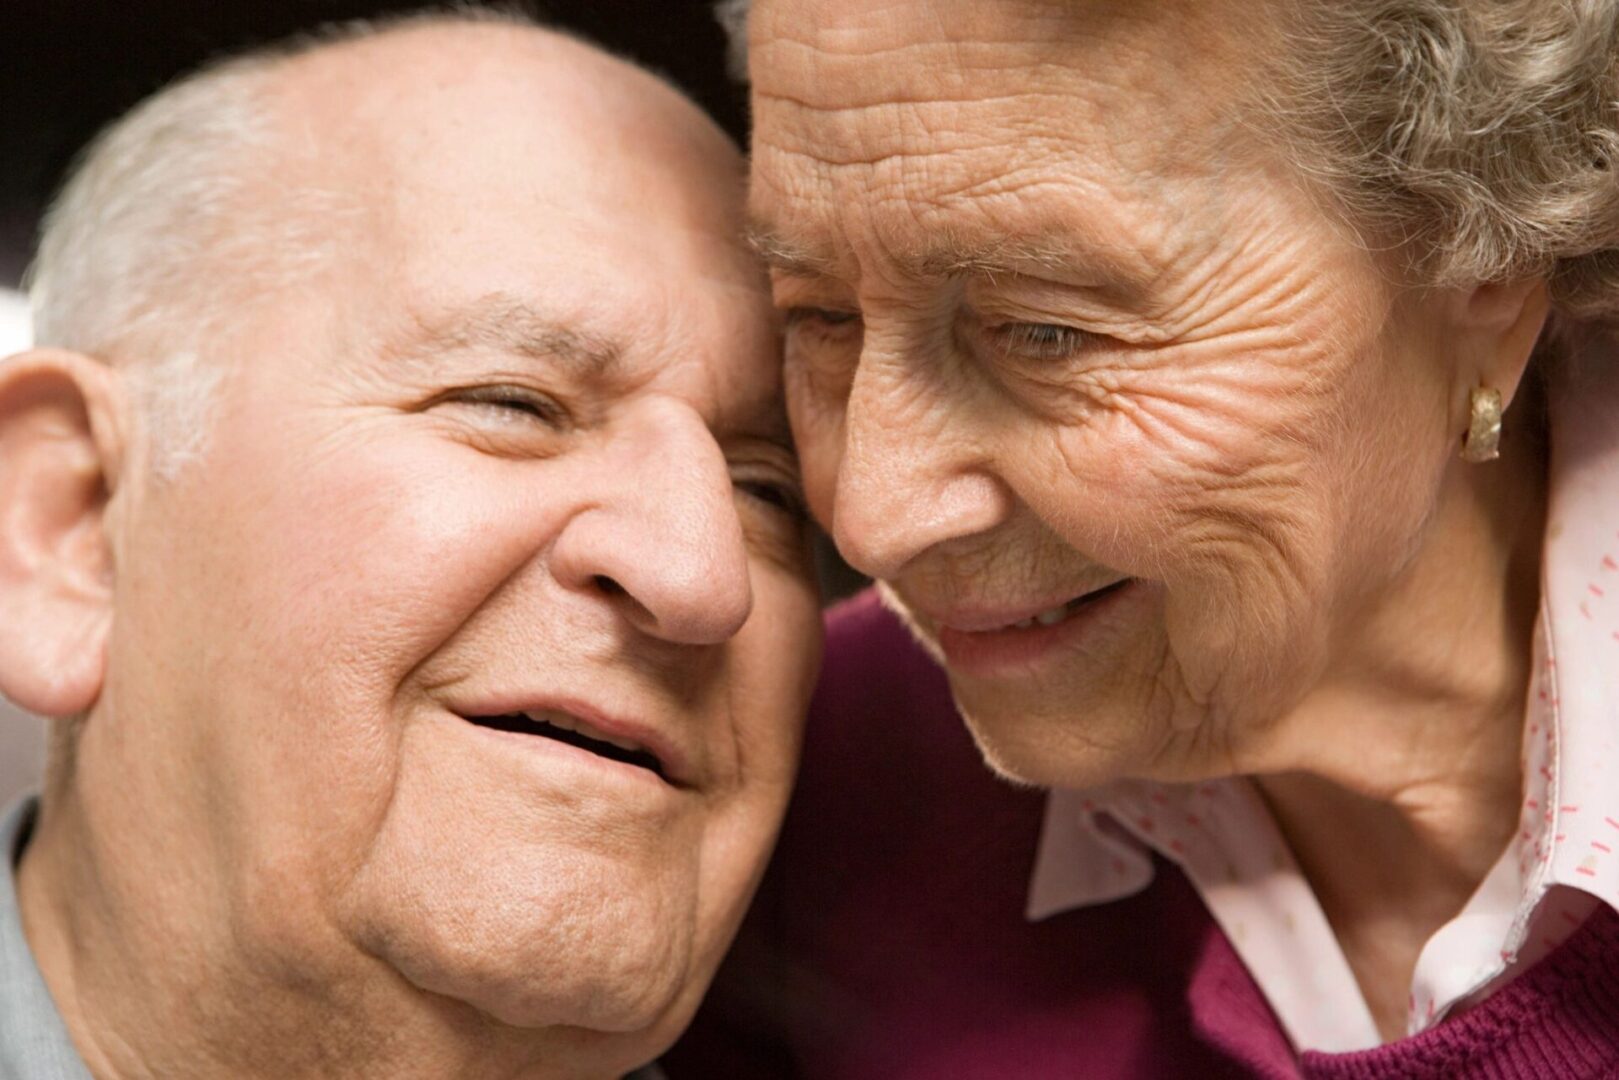 Portrait of a senior couple